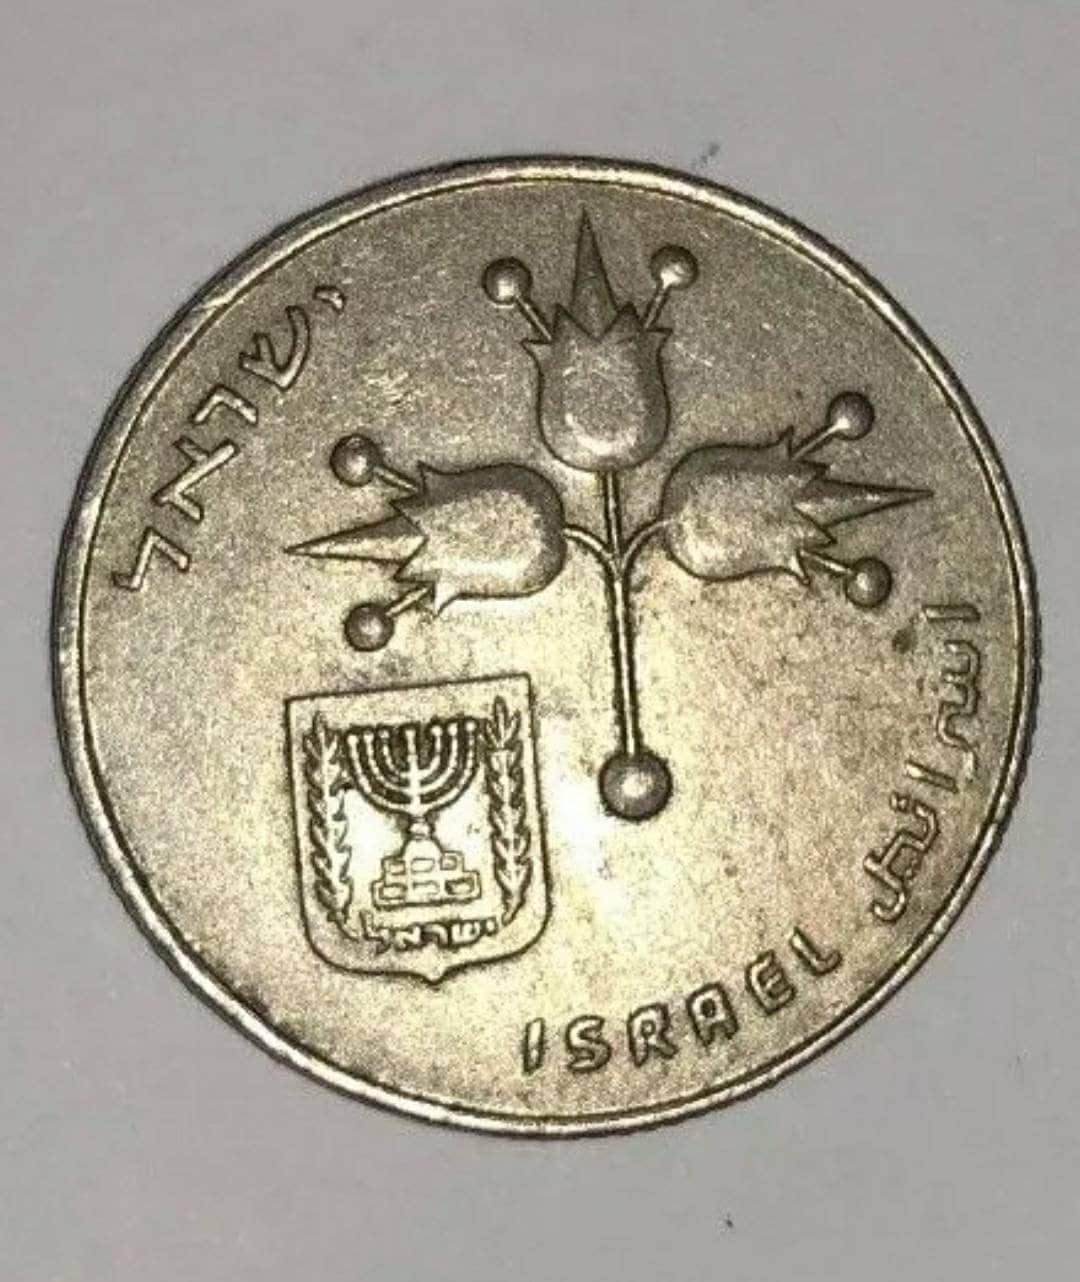 Schekel - Münzen Von Israel Stockfoto - Bild von bargeld